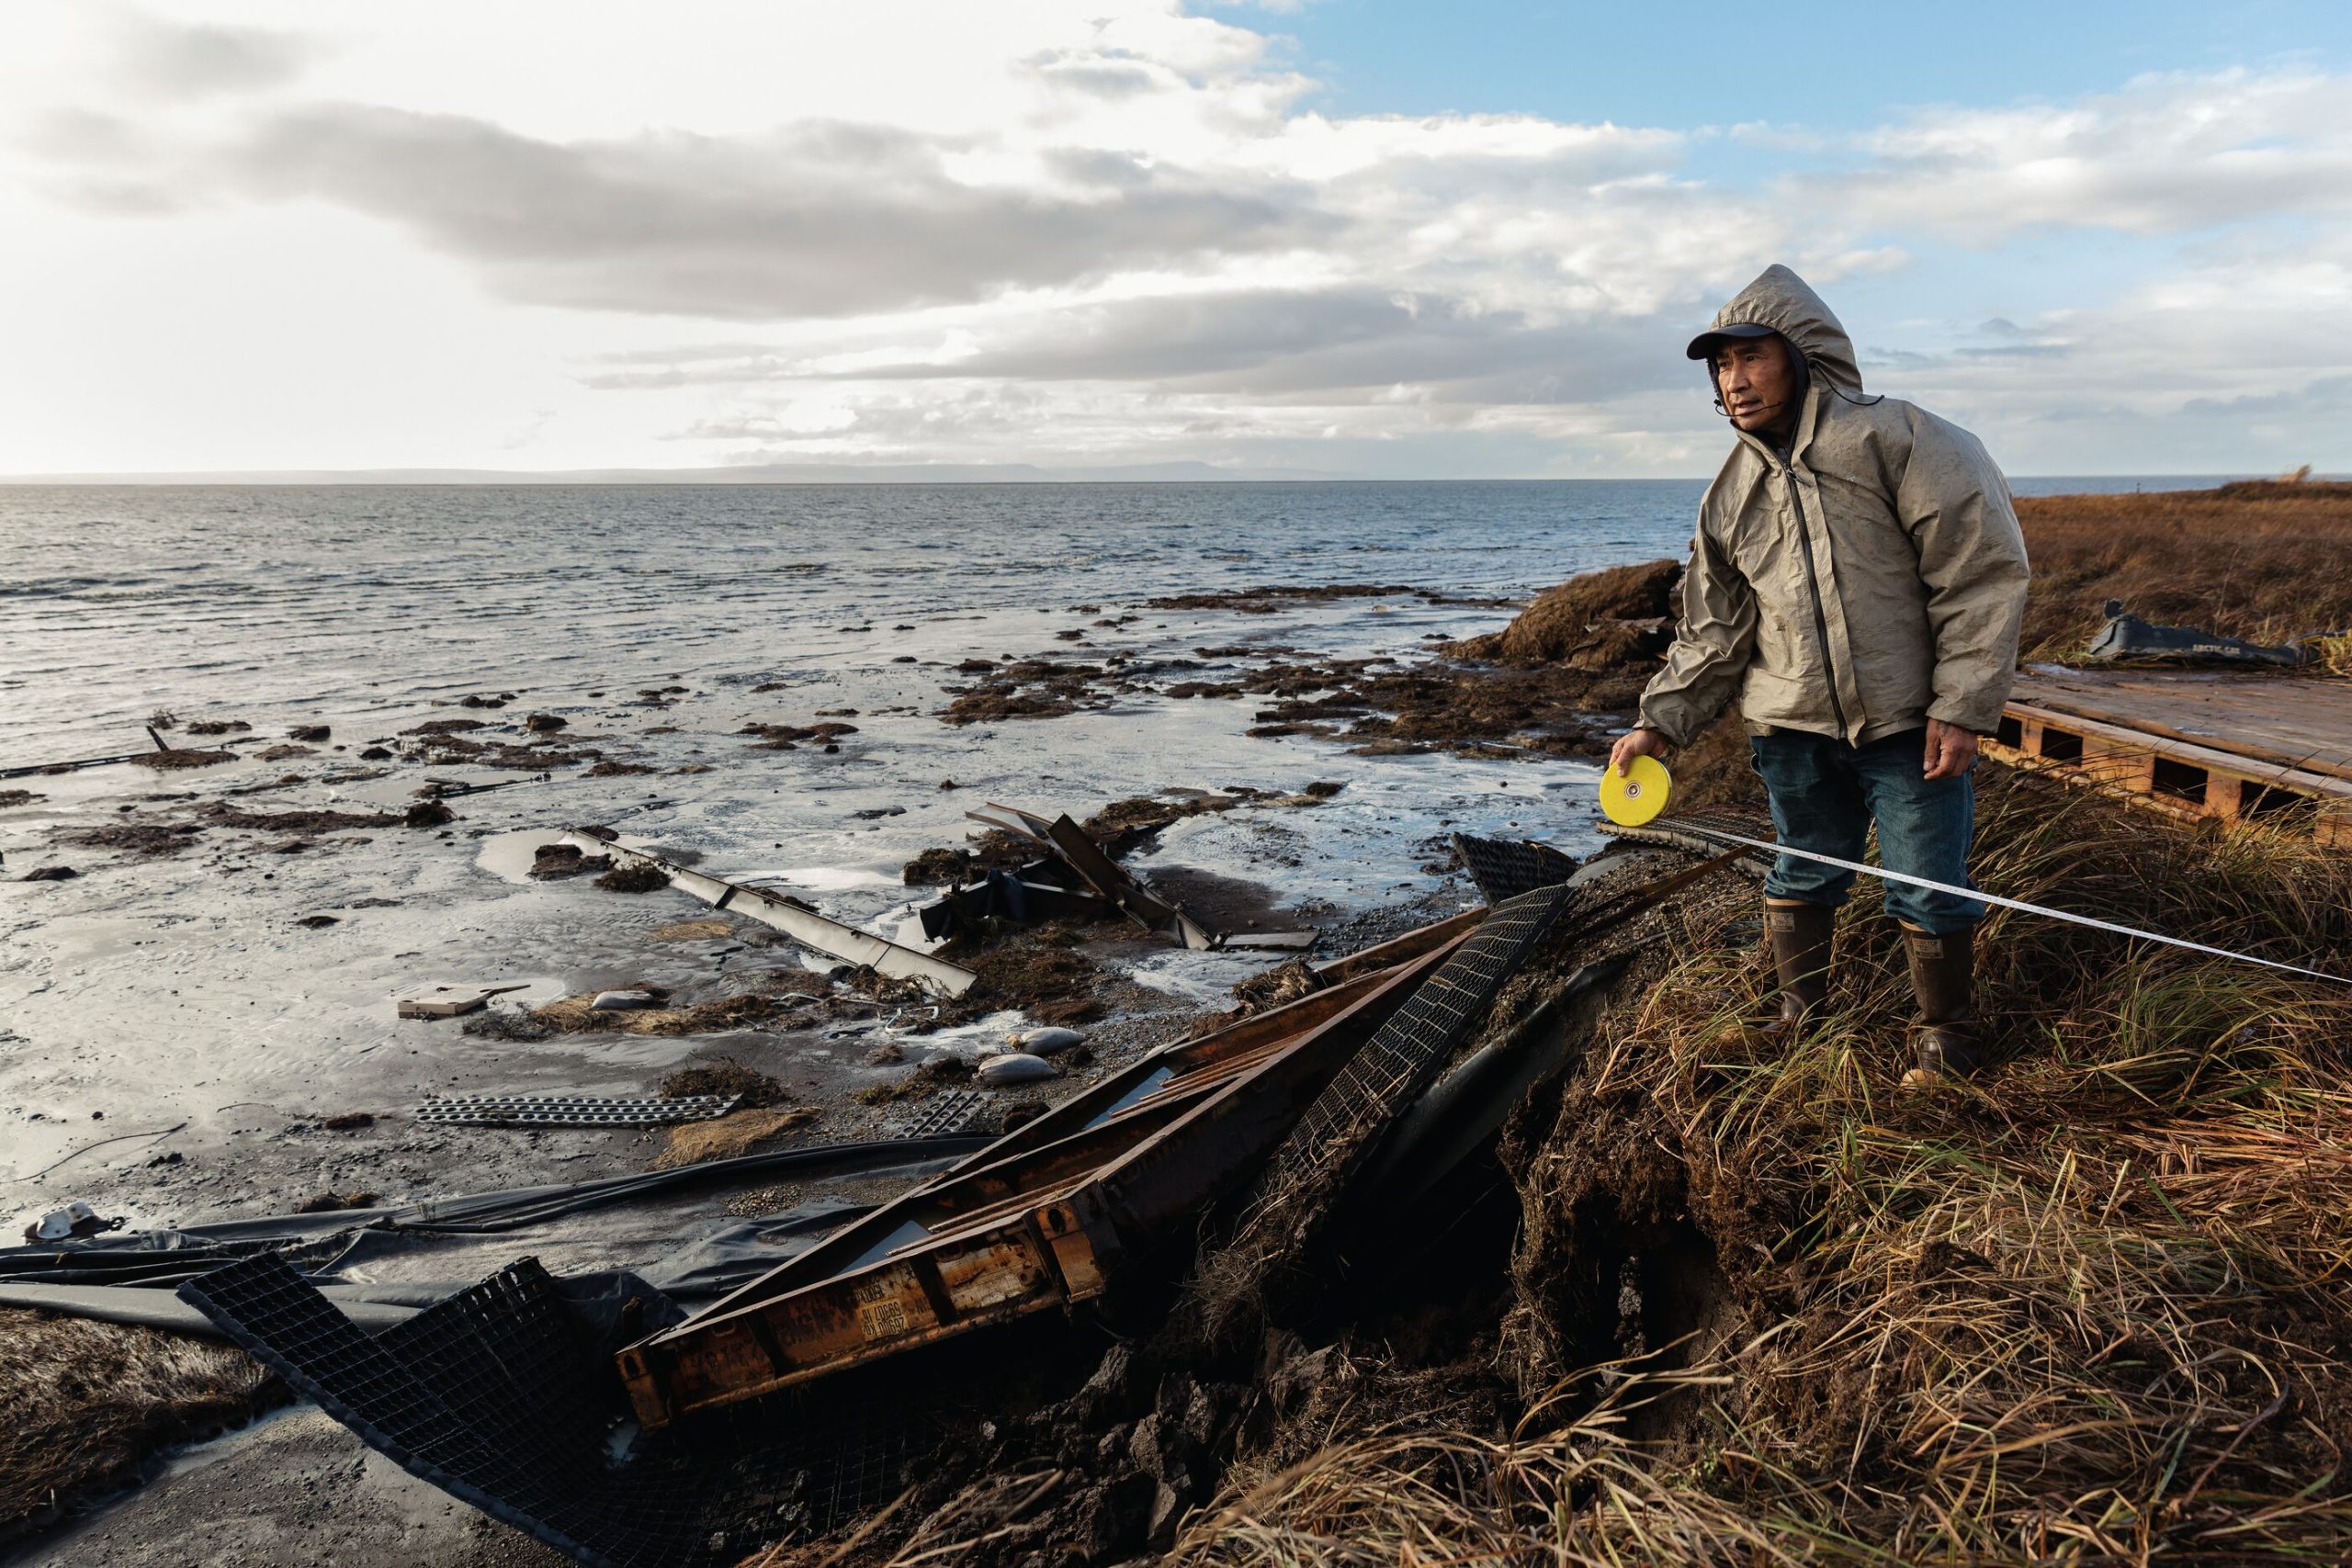 La historia de Netwok, la aldea de Alaska destinada a desaparecer por el cambio climático